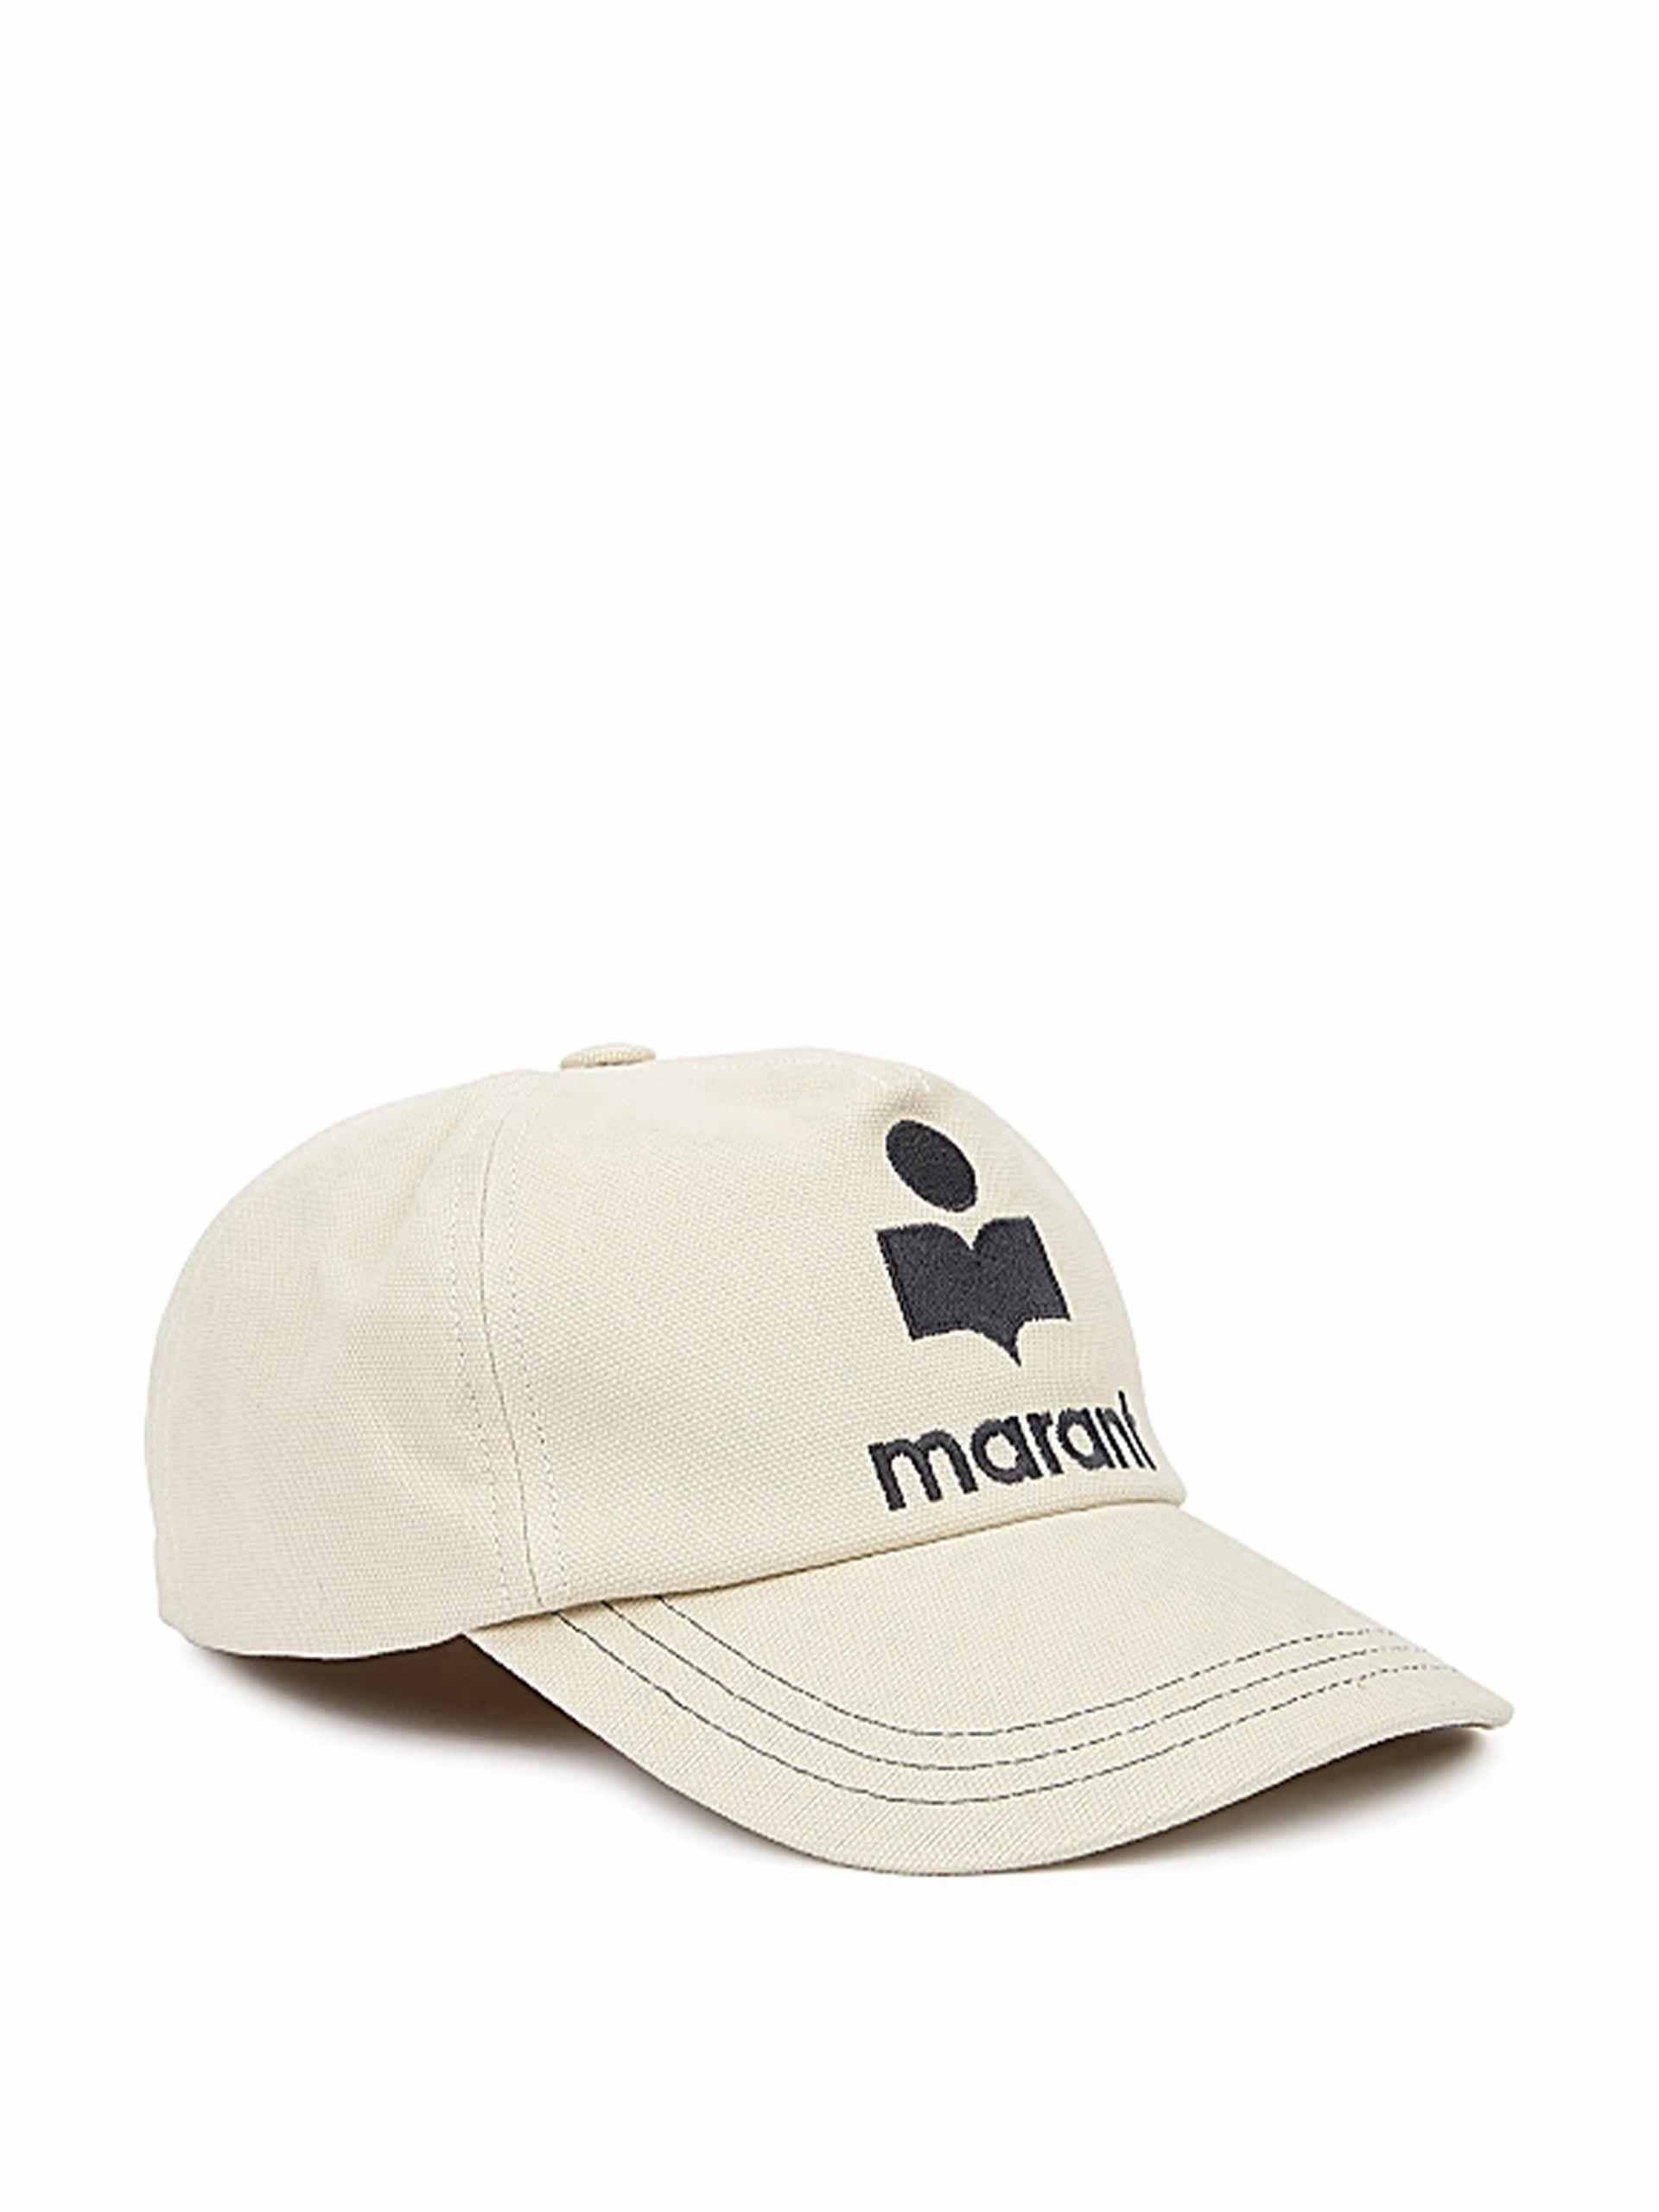 Cotton baseball cap with logo